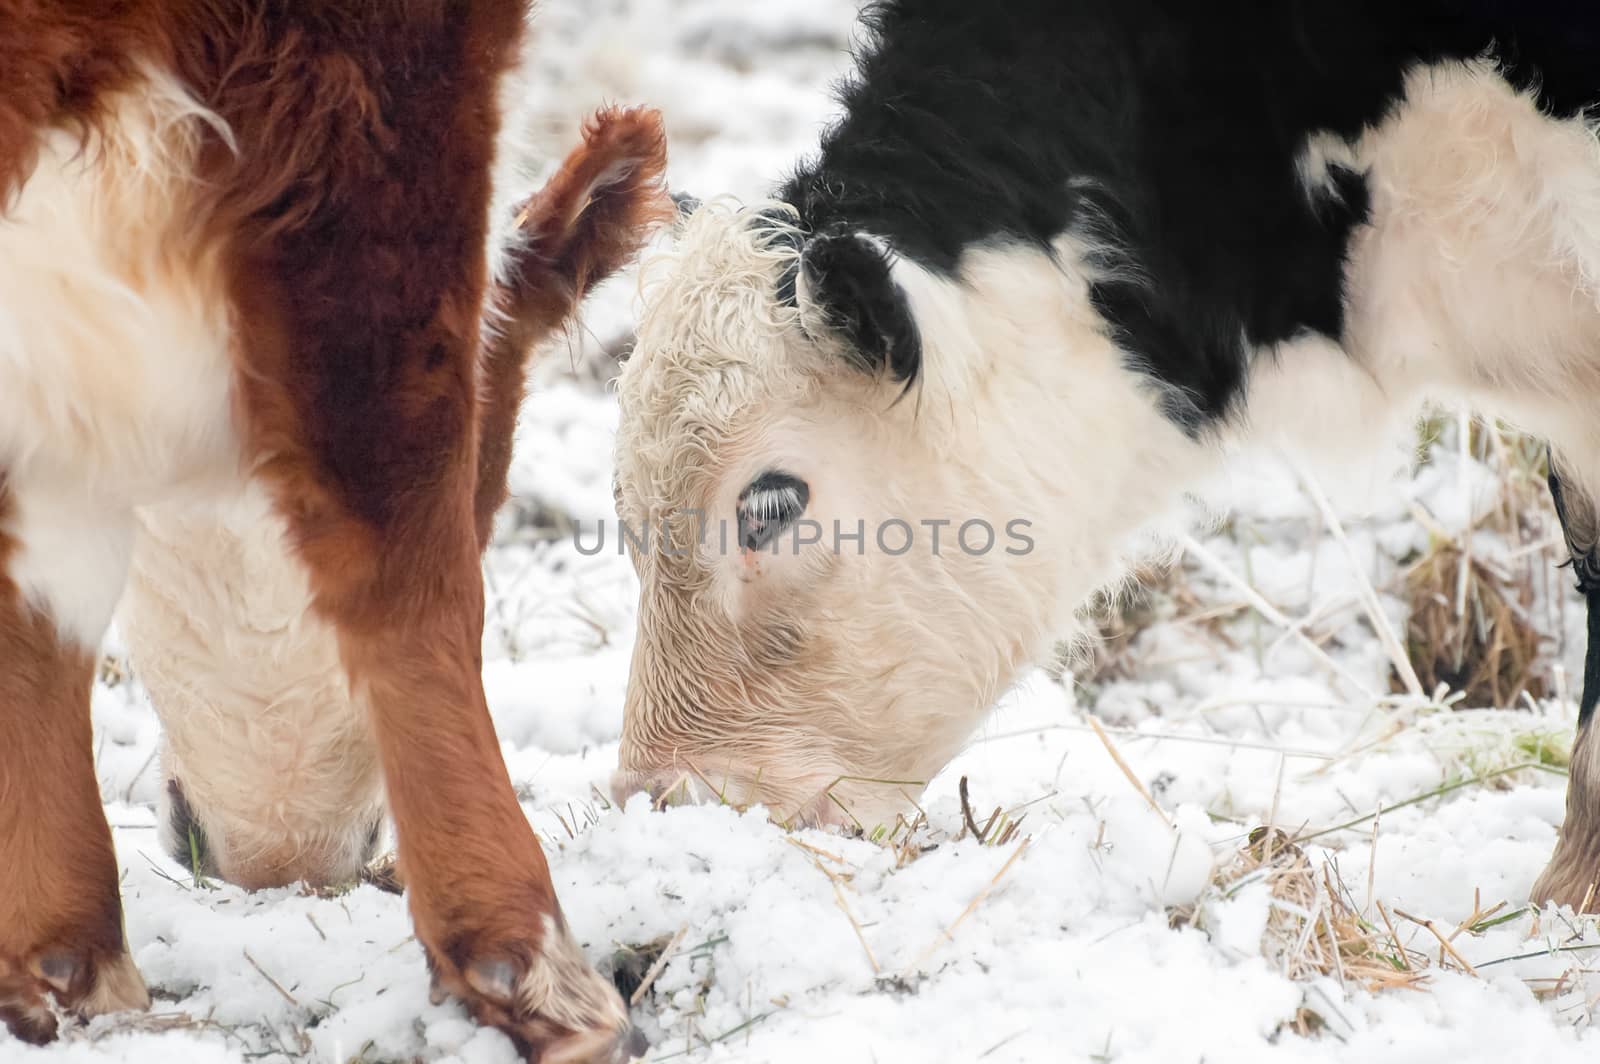 cattle grazing in snow by nelsonart